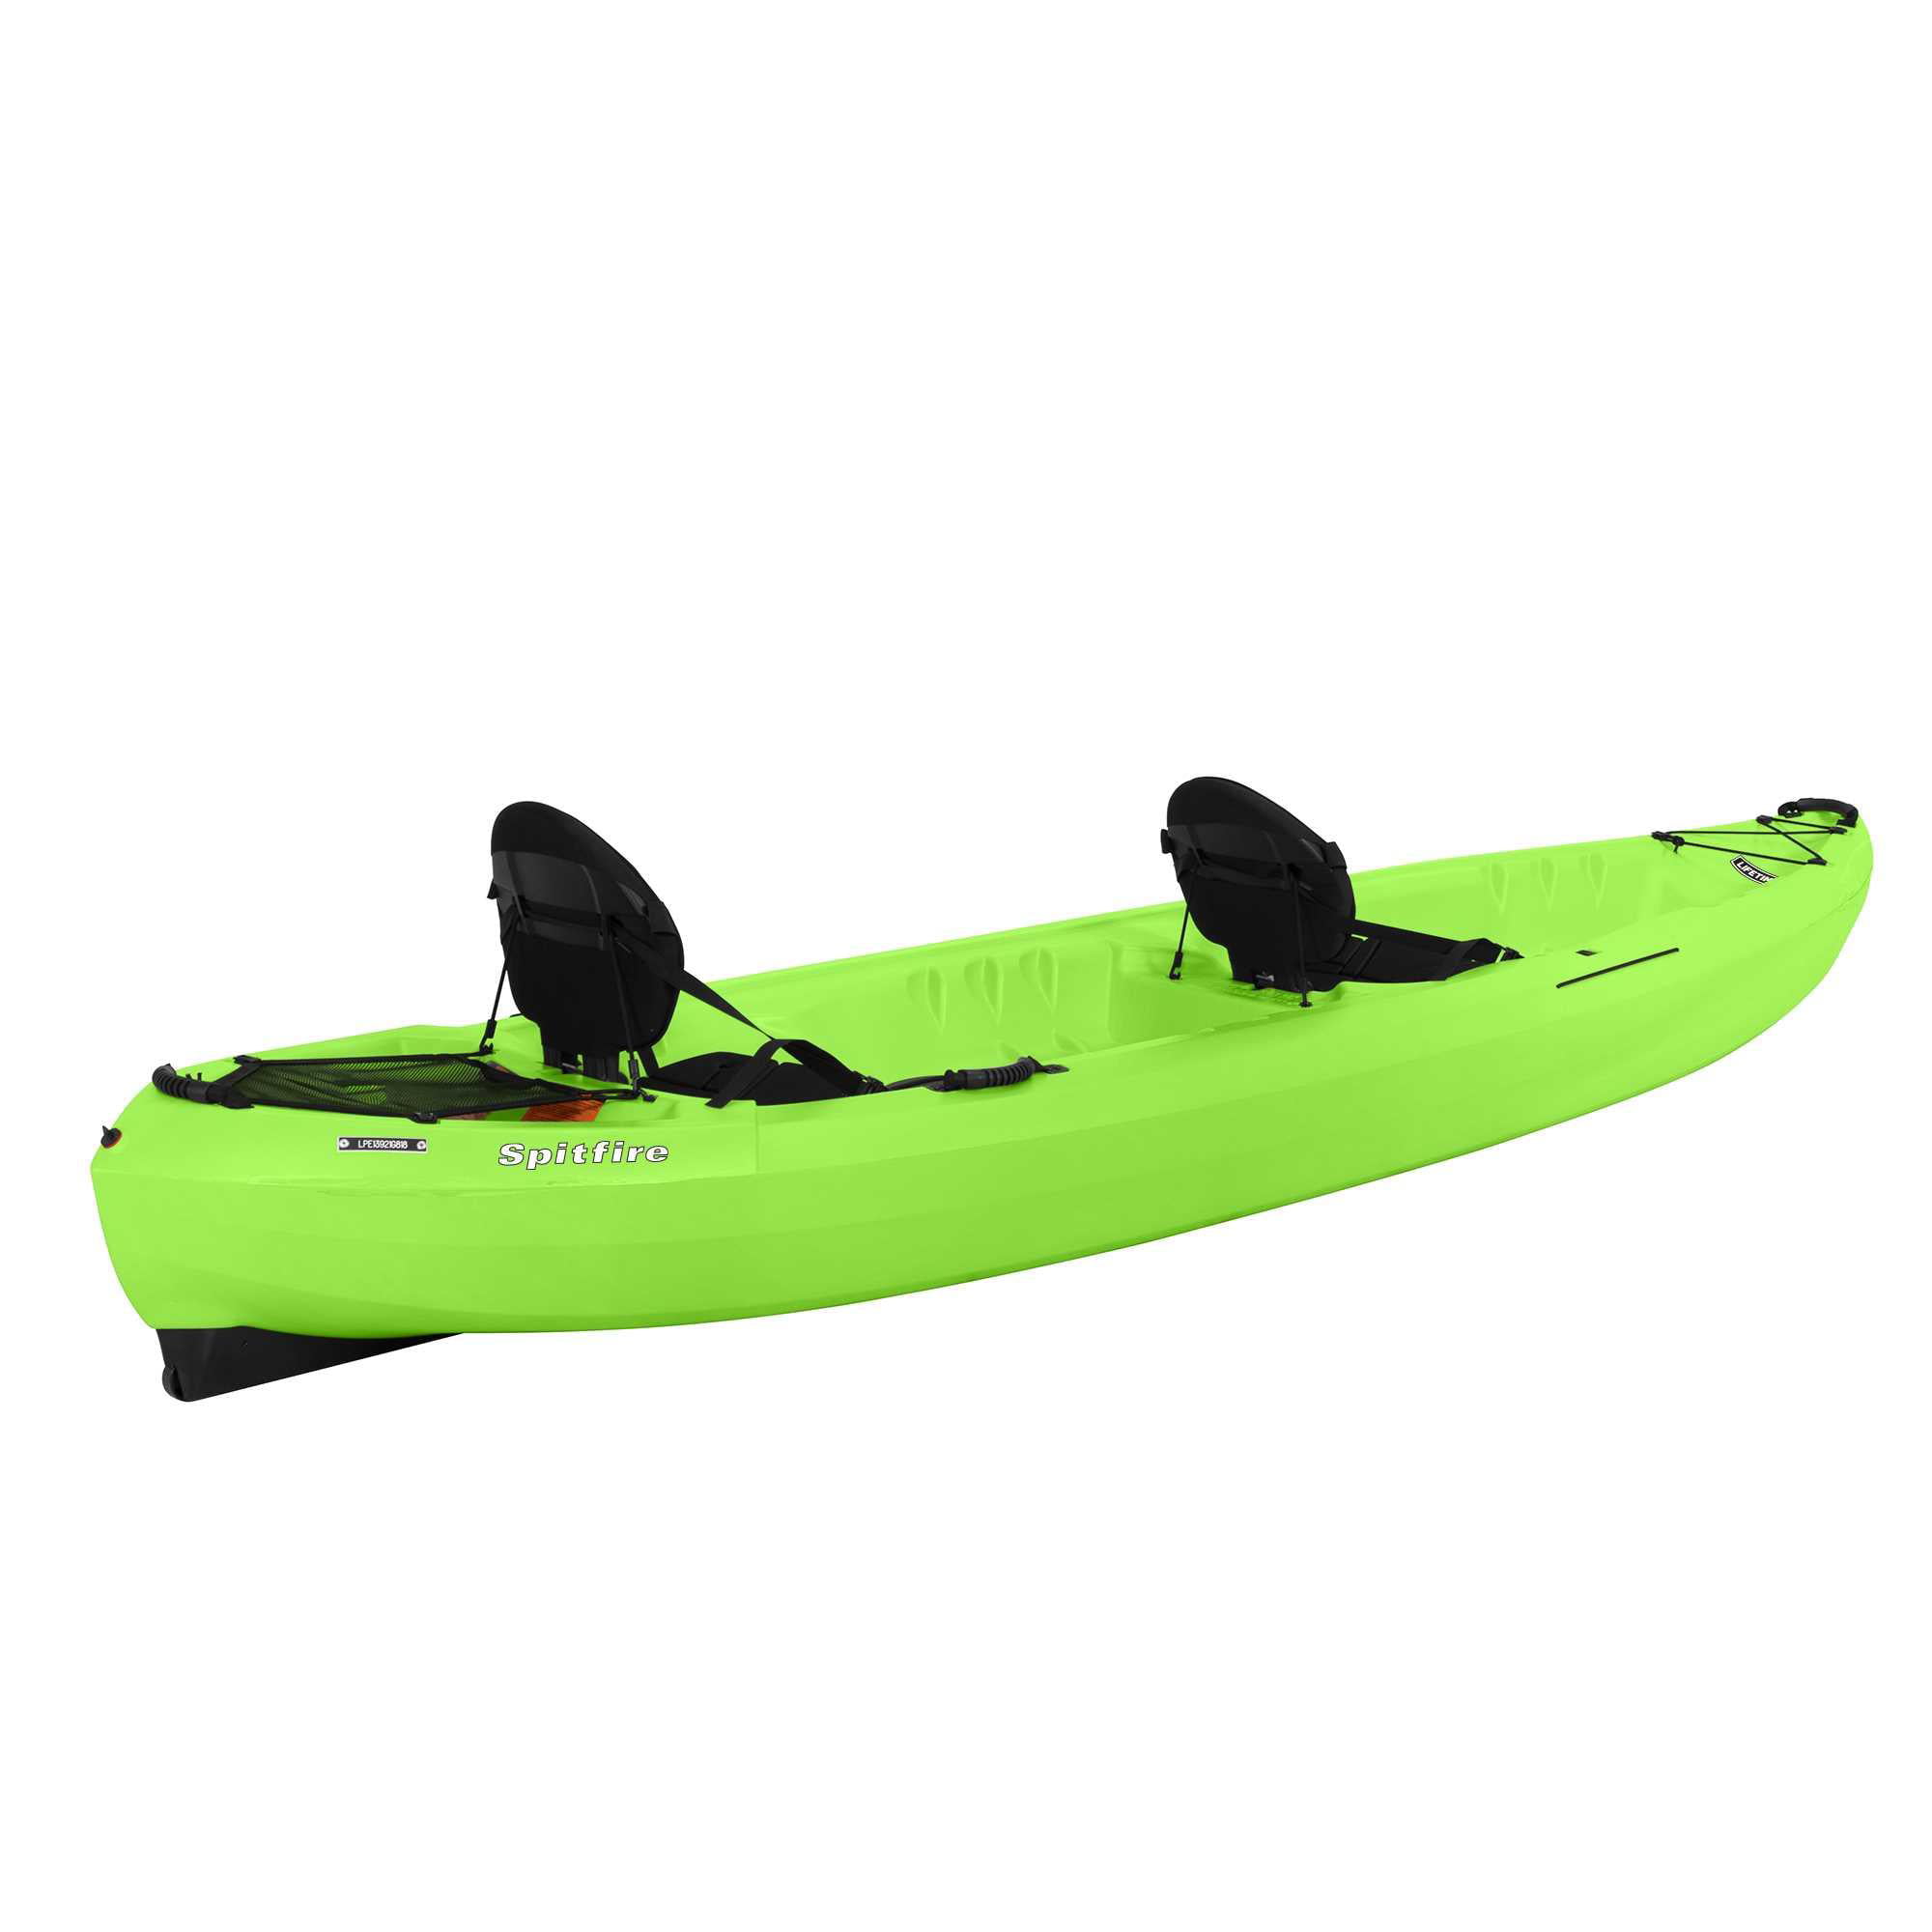 Lifetime Spitfire 12T Tandem Kayak, Lime Green - 90476